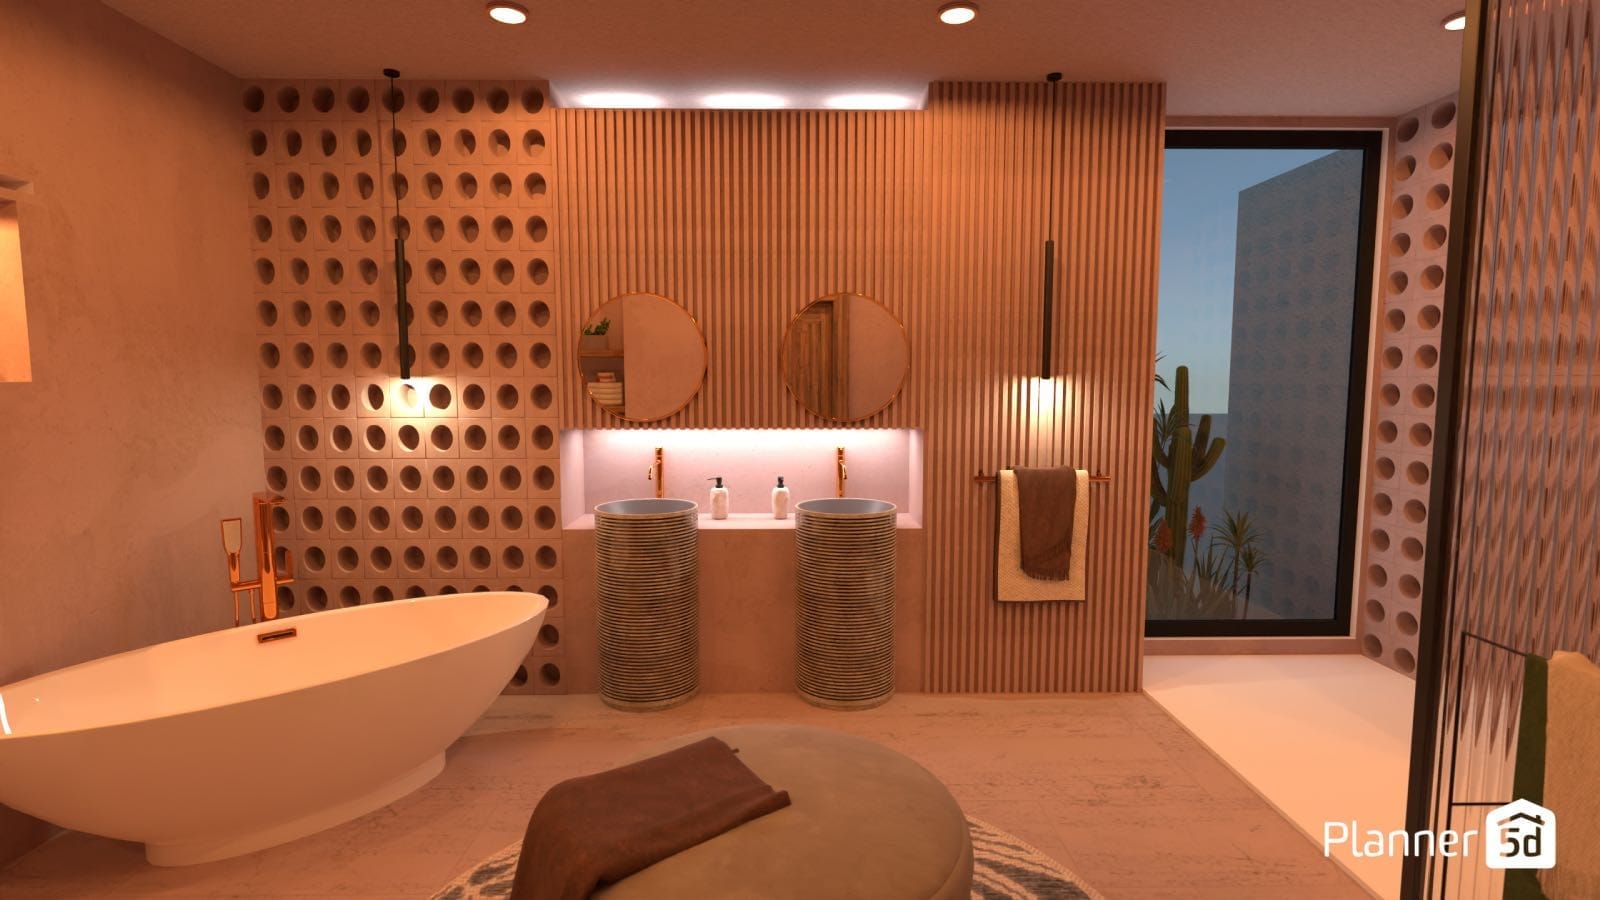 bathroom 3d render planner 5d interior design software